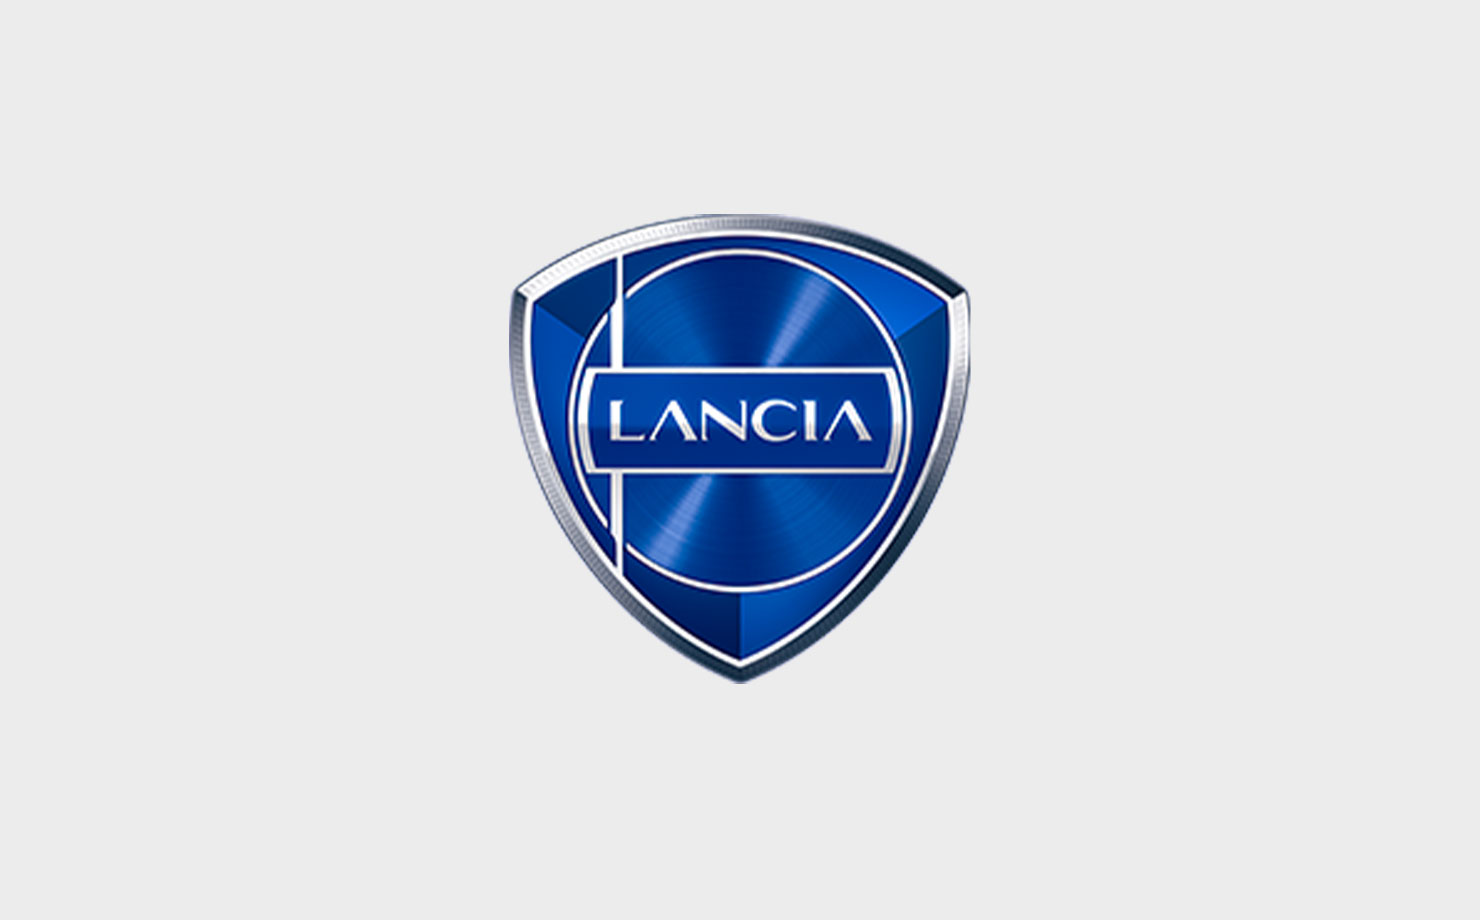 Image of Lancia logo